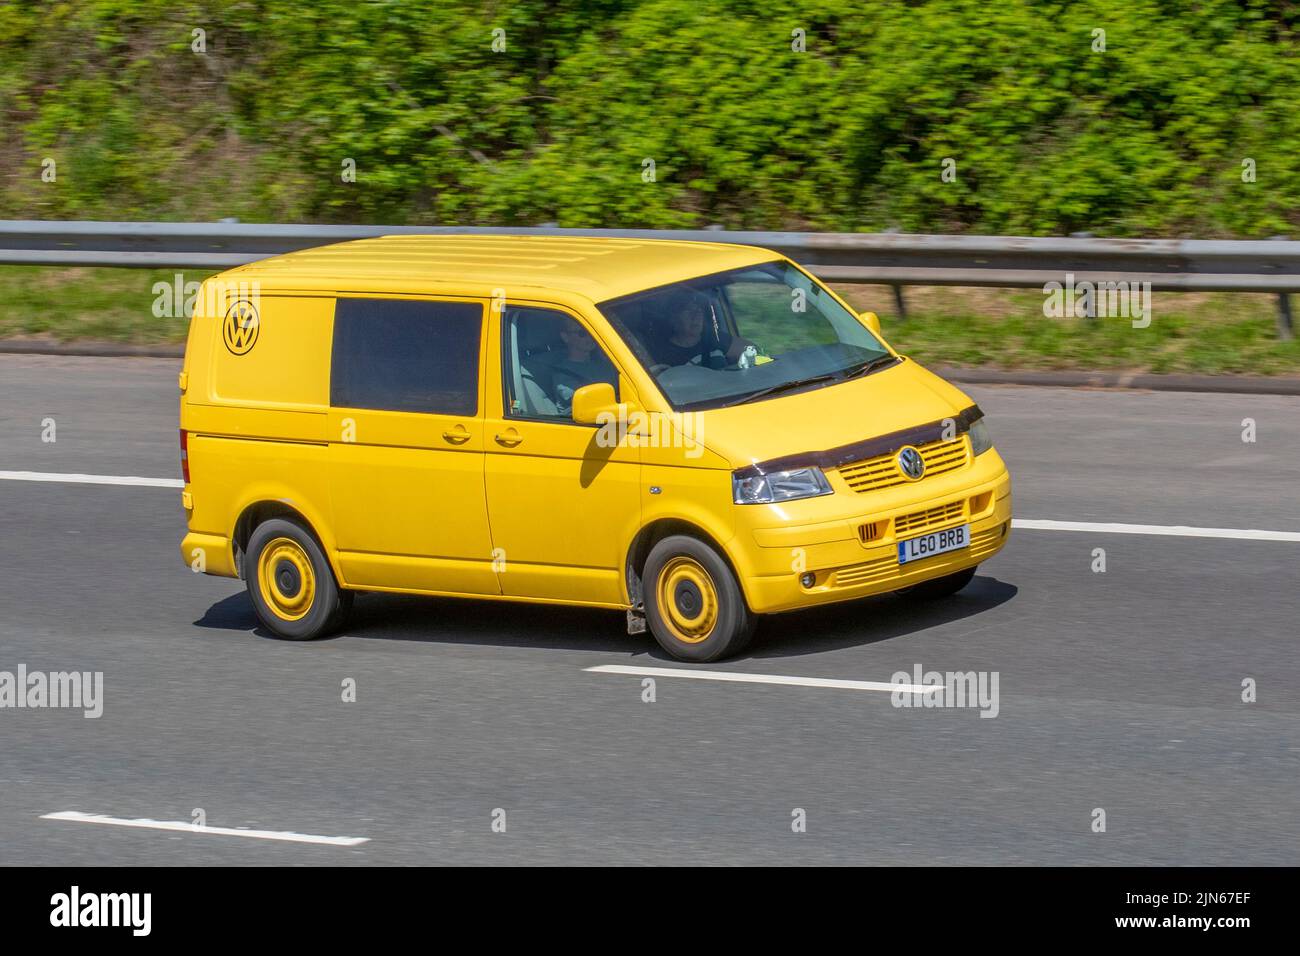 Download wallpapers Volkswagen Transporter T5, tuning, vans